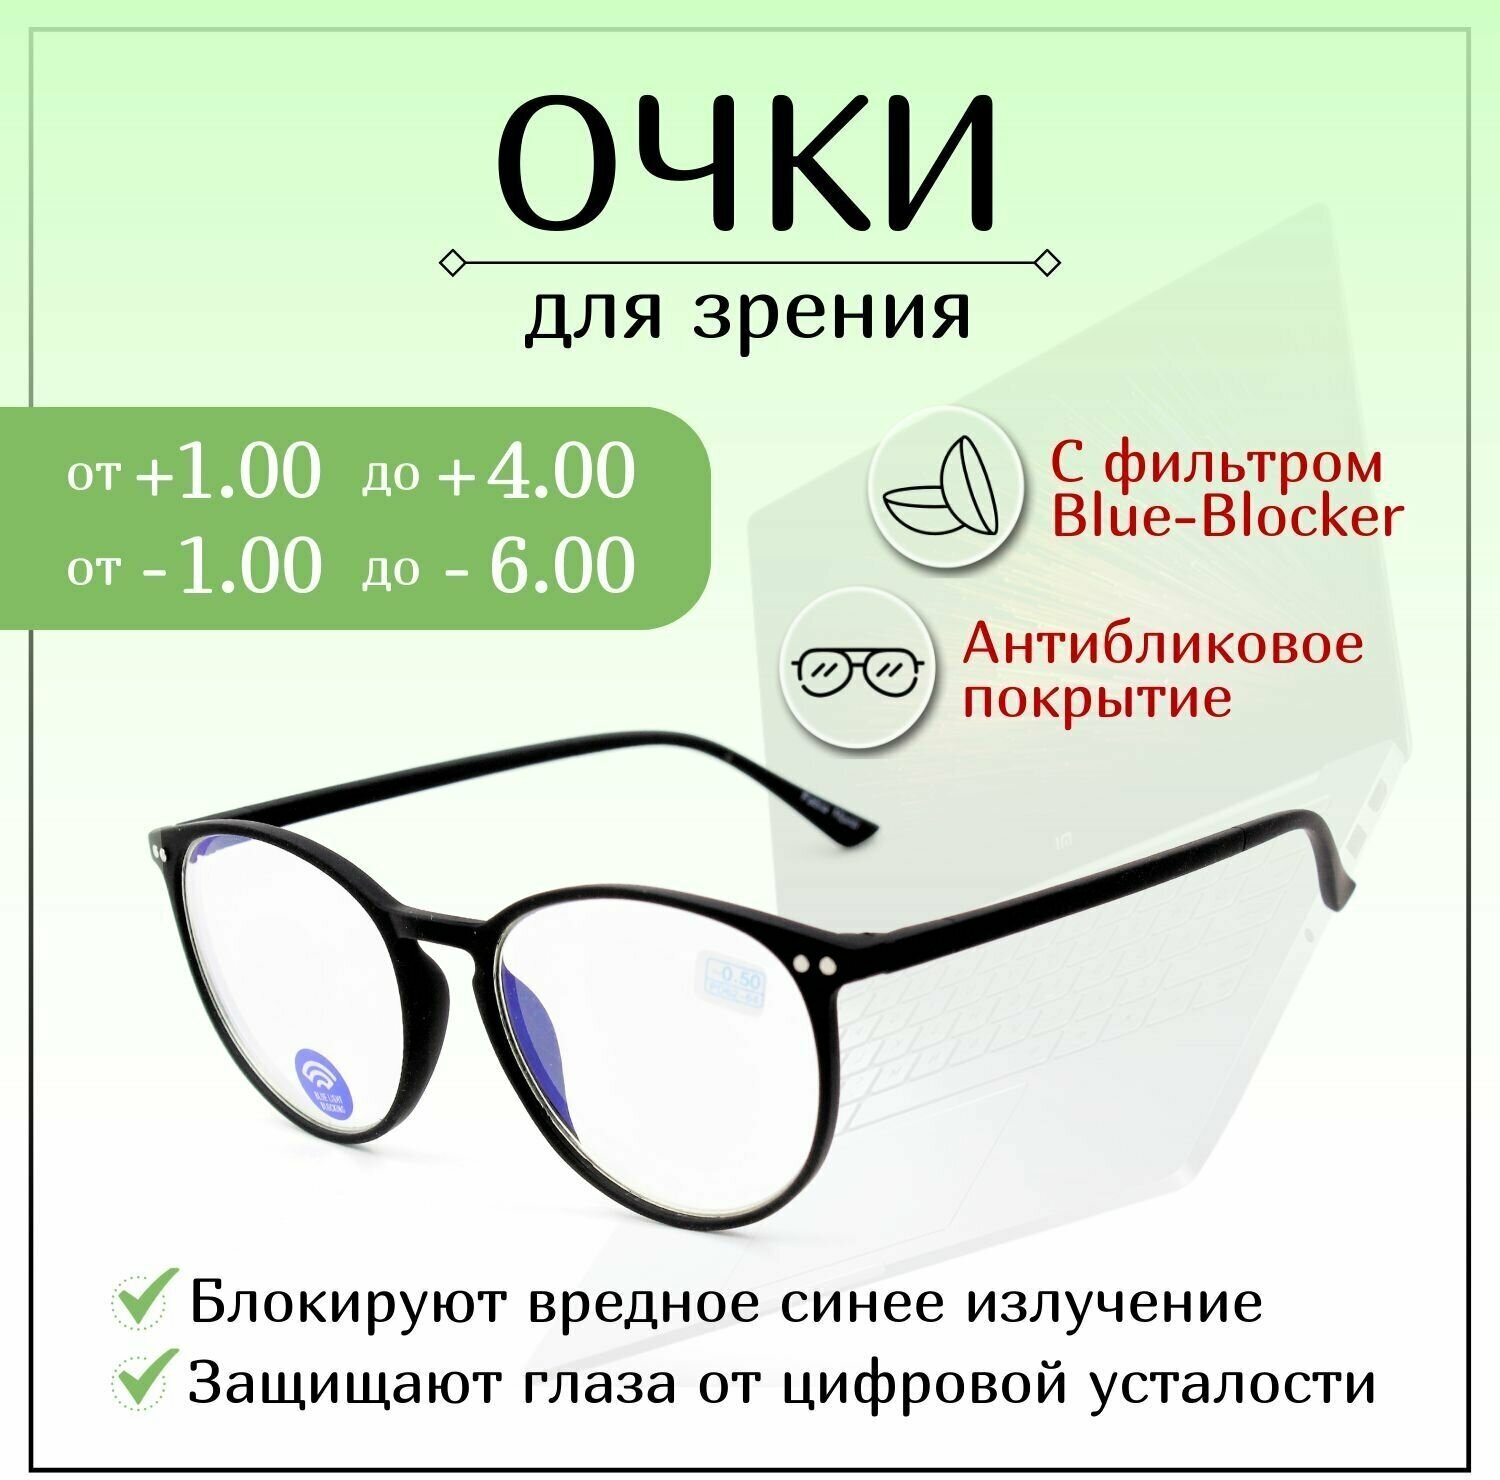 Готовые очки для зрения с диоптриями +3,50, FABIA MONTI готовые, женские, мужские, корригирующие